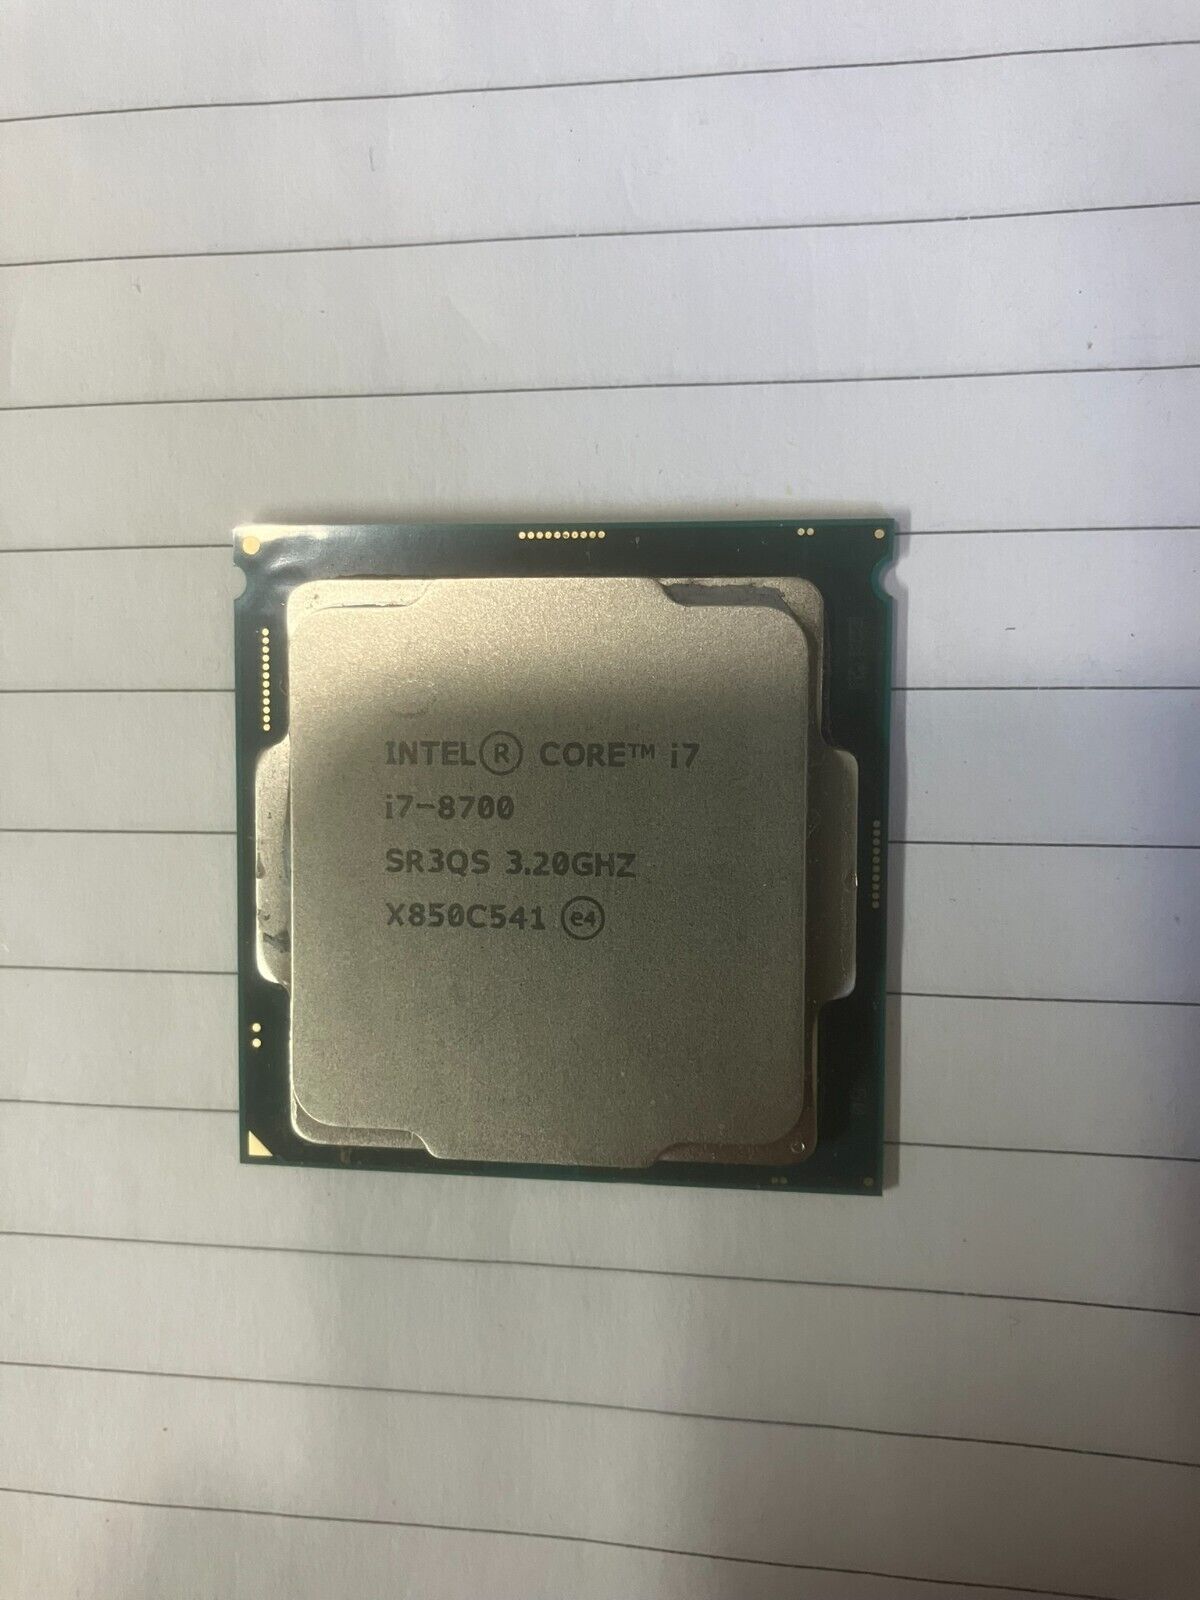 Intel Core i7-8700 Processor (3.2 GHz, 6 Cores, LGA 1151) - SR3QS